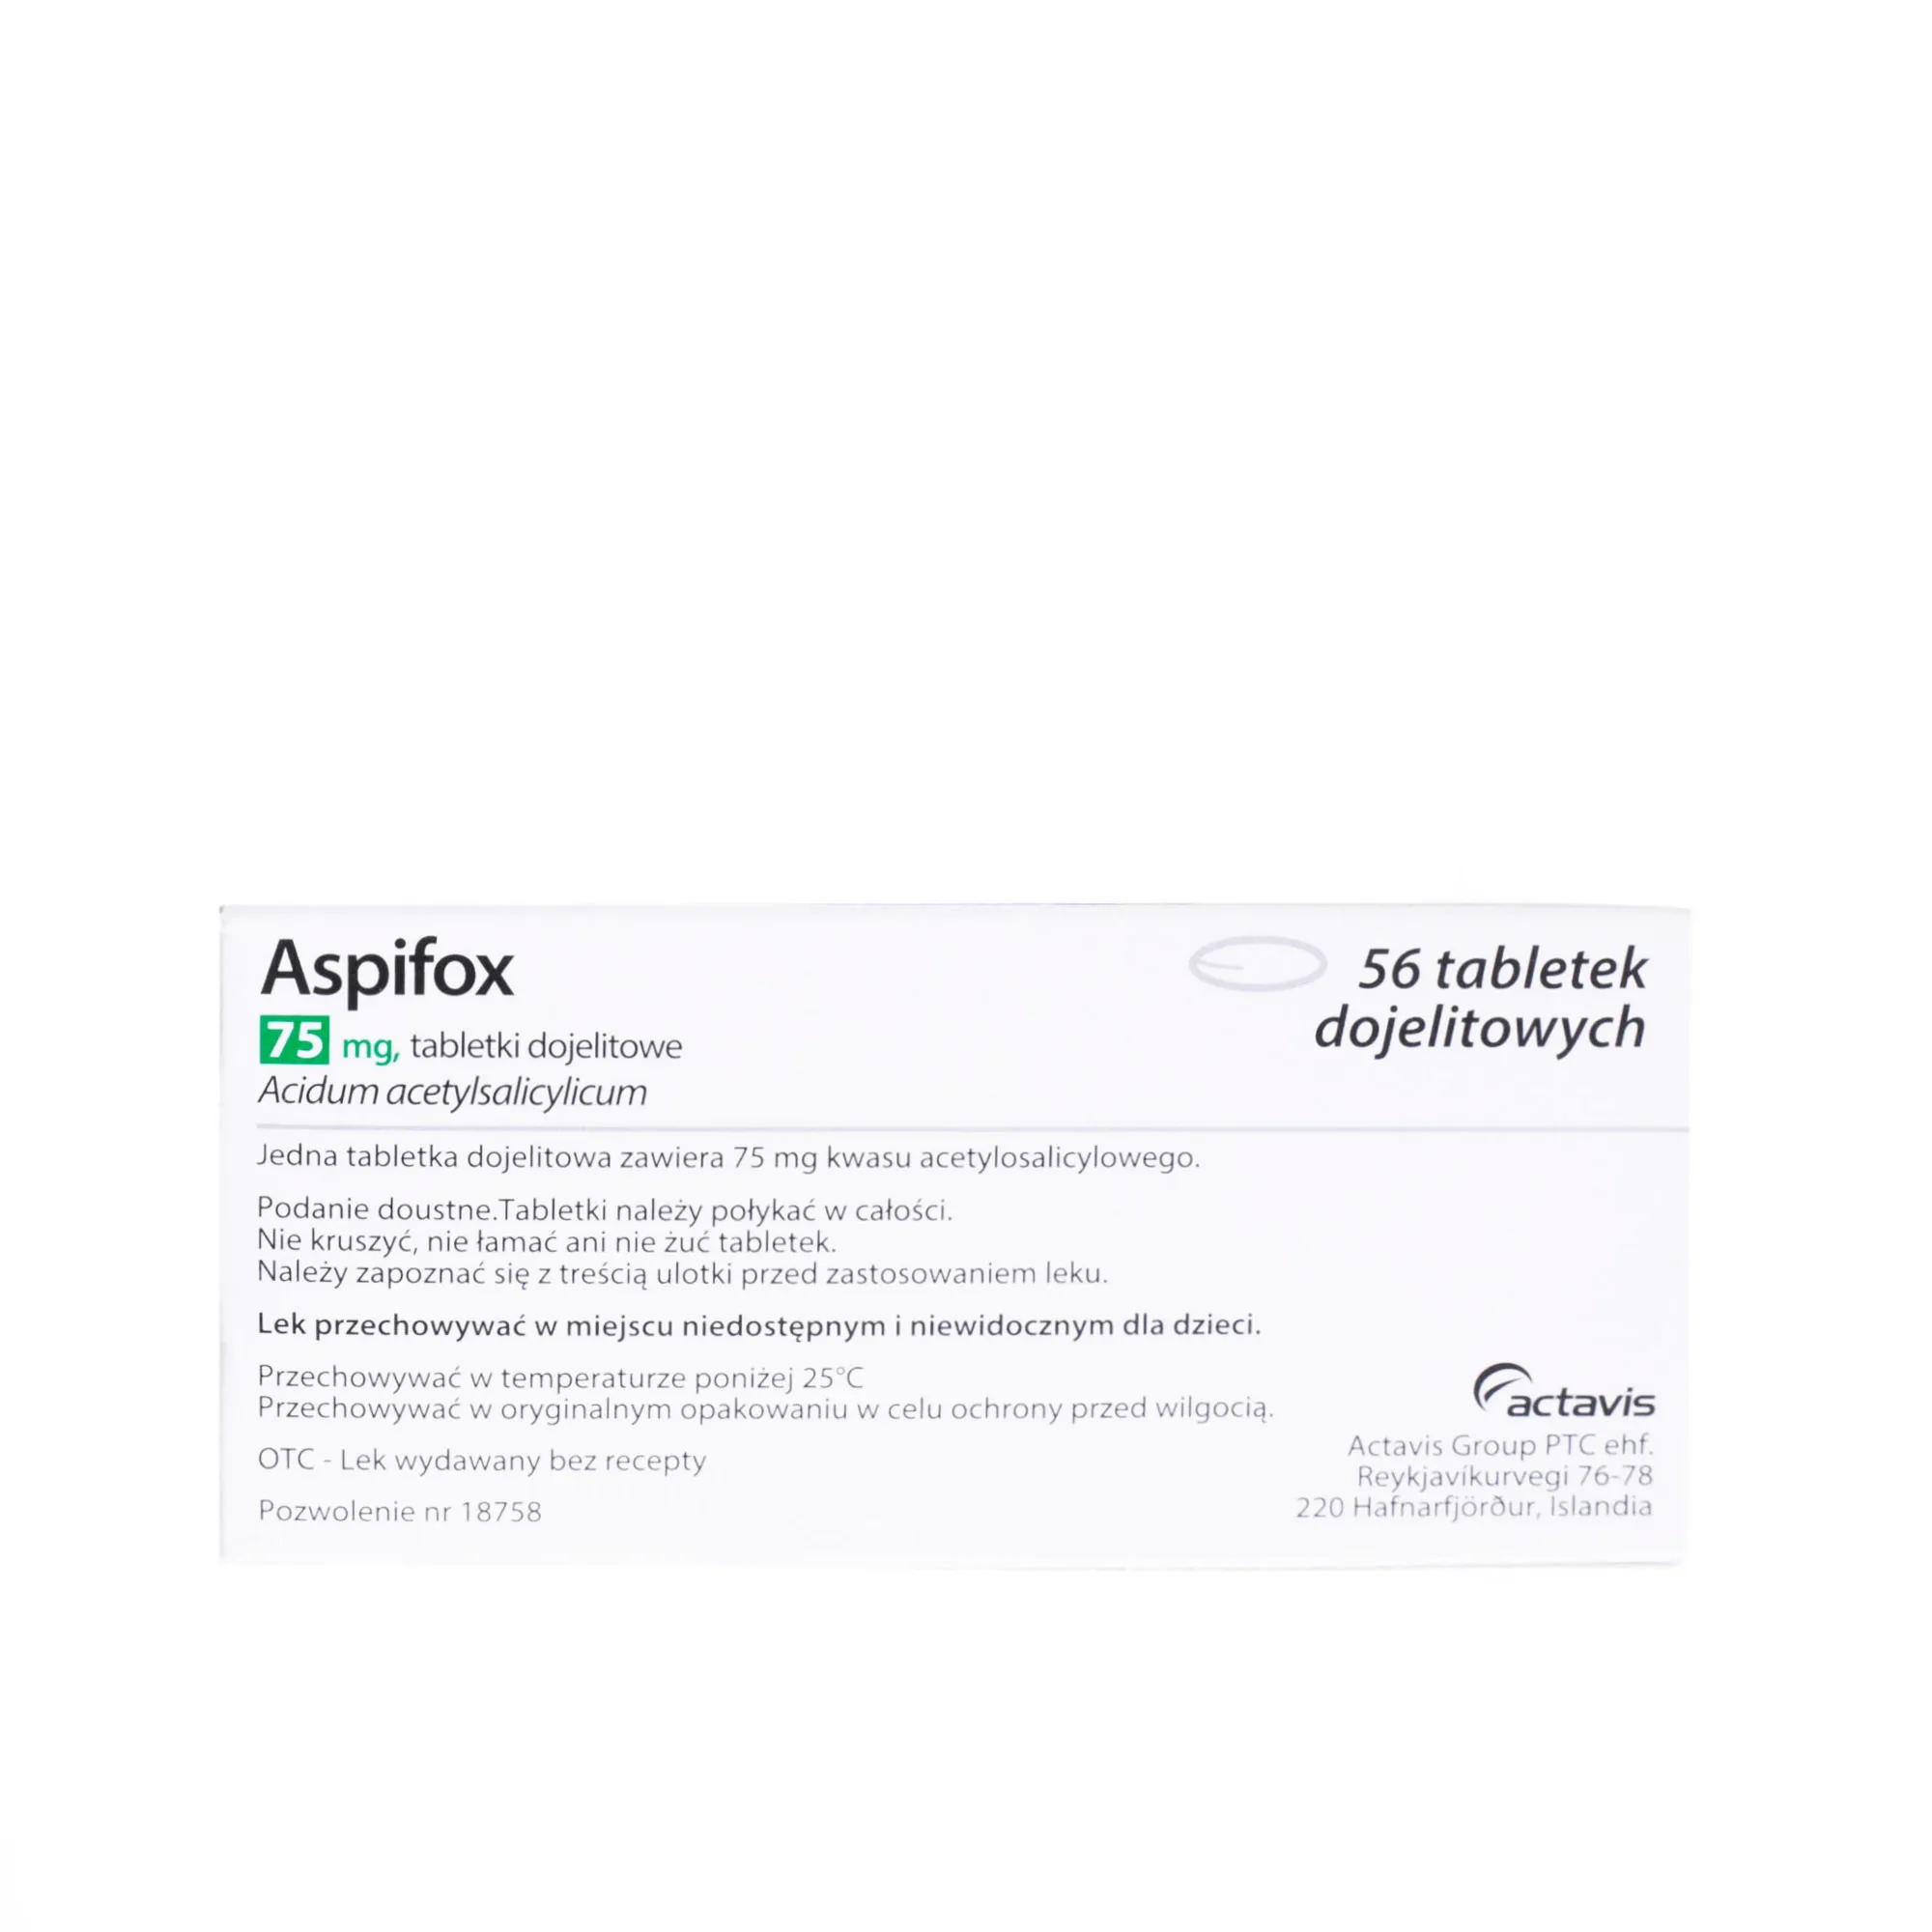 Aspifox 75 mg - lek przeciwpłytkowy, 56 tabletek dojelitowych 